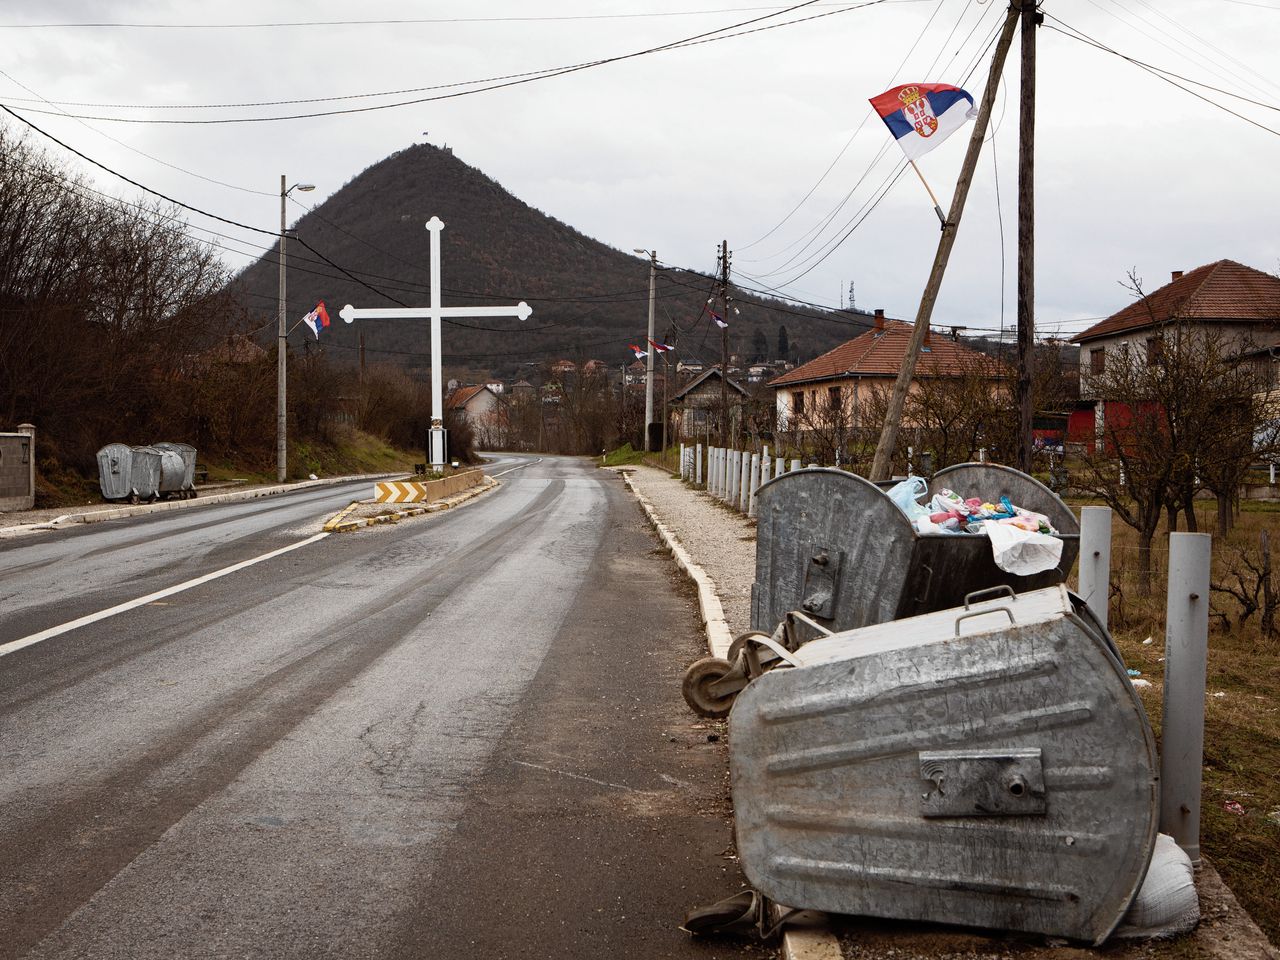 De blokkades bij het plaatsje Rudare, bij Mitrovica, zijn weer even verdwenen.